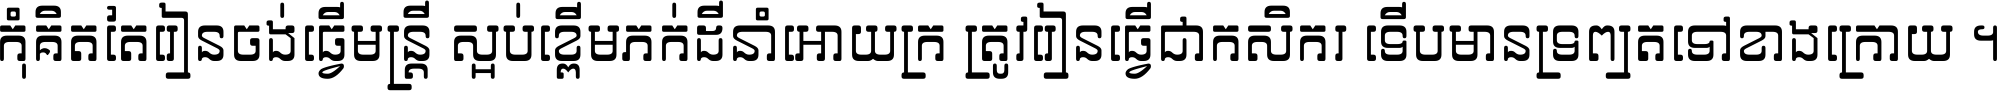 Khmer Telecommunication